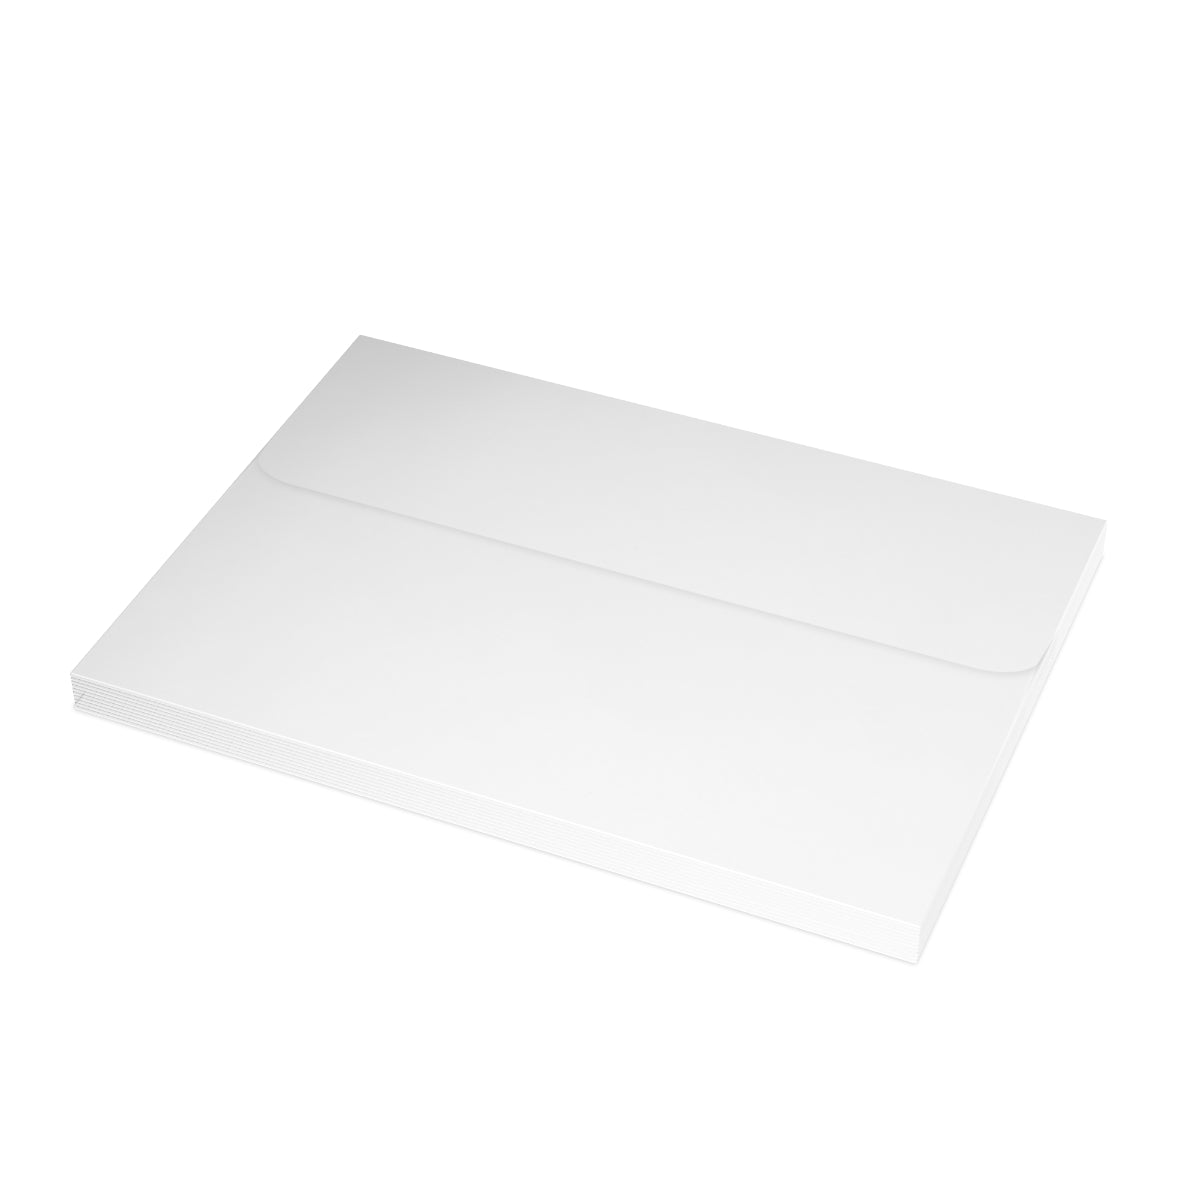 Sedona gefaltete matte Notizkarten + Umschläge (10 Stück) 